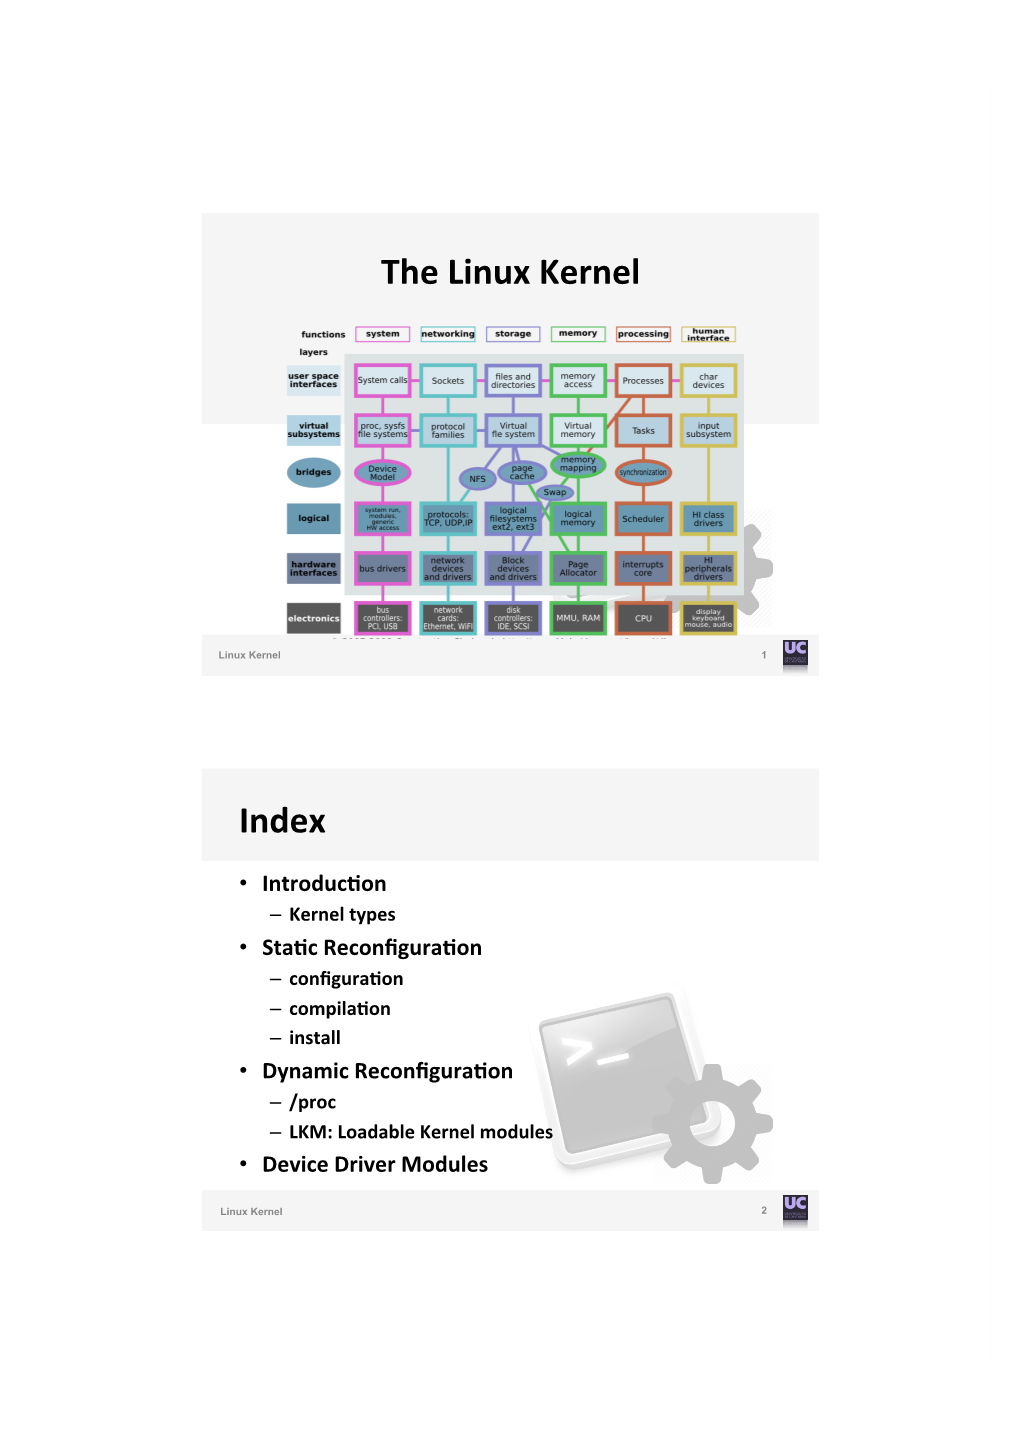 The Linux Kernel Index